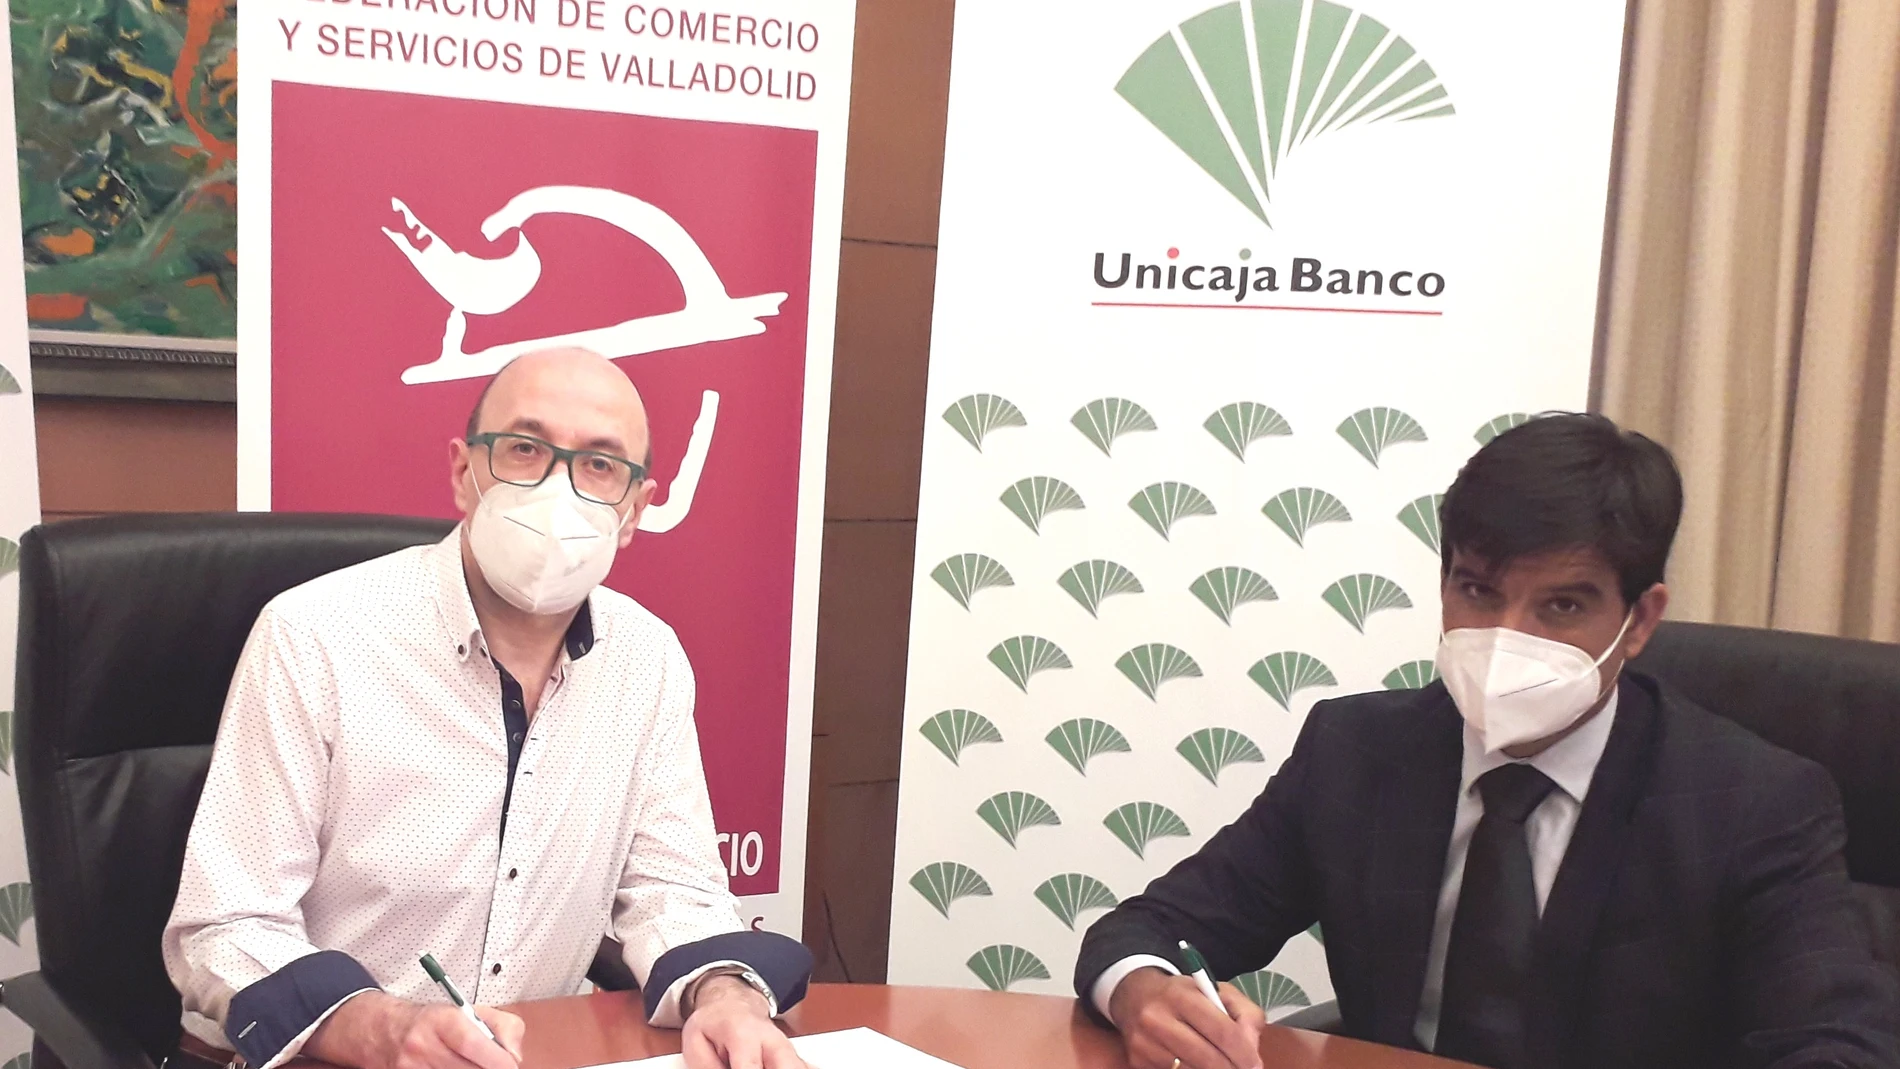 El convenio ha sido firmado entre el Director Territorial de Unicaja Banco, Manuel Rubio; y el Presidente de Fecosva, Jesús Herreras.